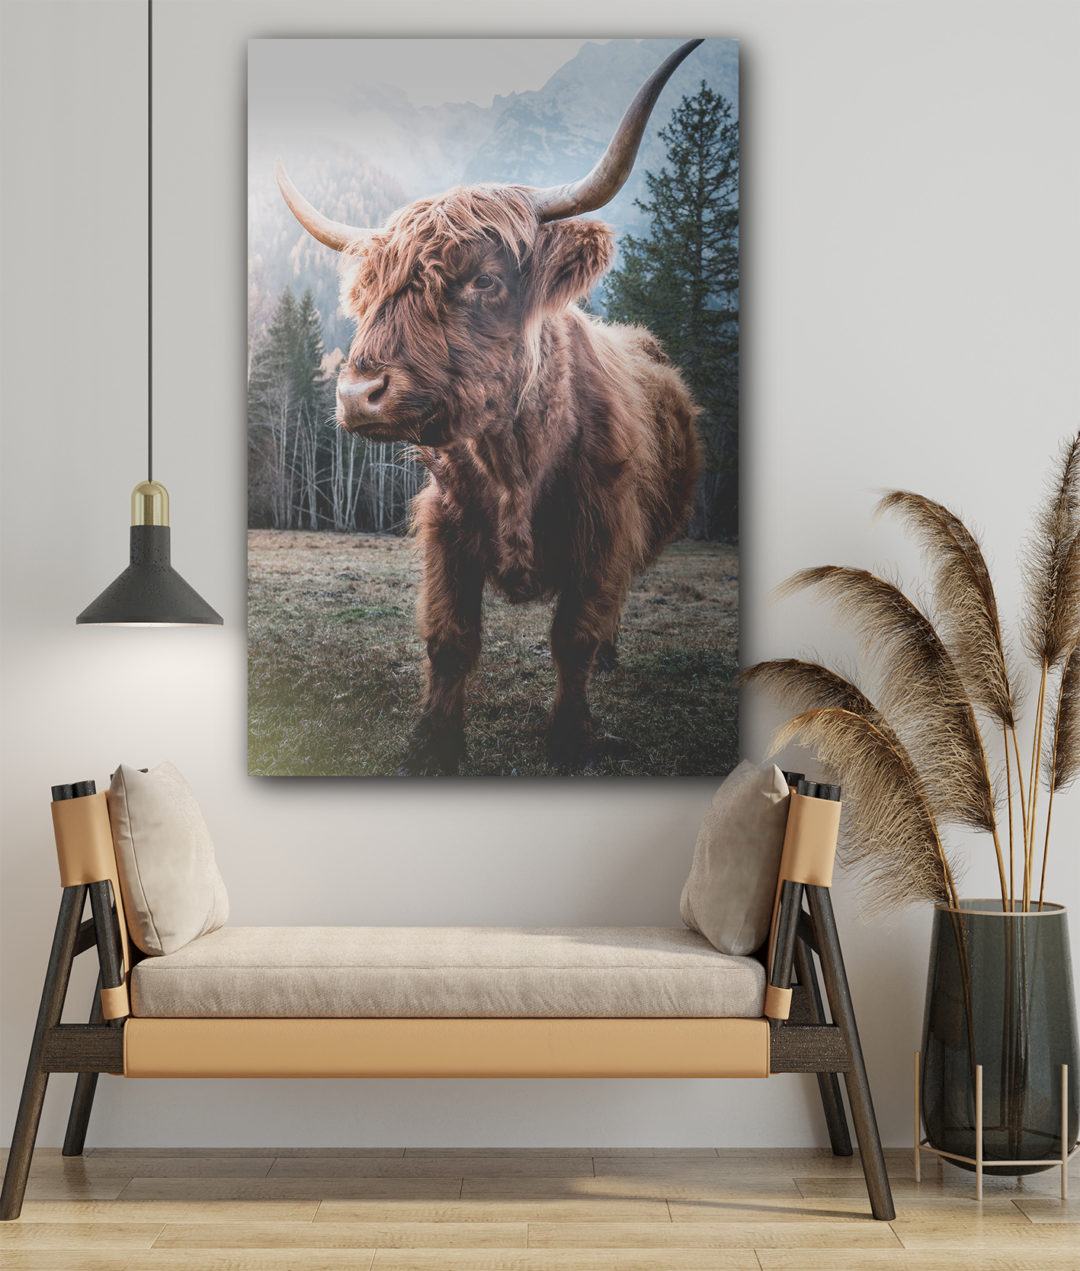 Wandbild Bulle stehend im Wohnzimmer, Tiere & Natur